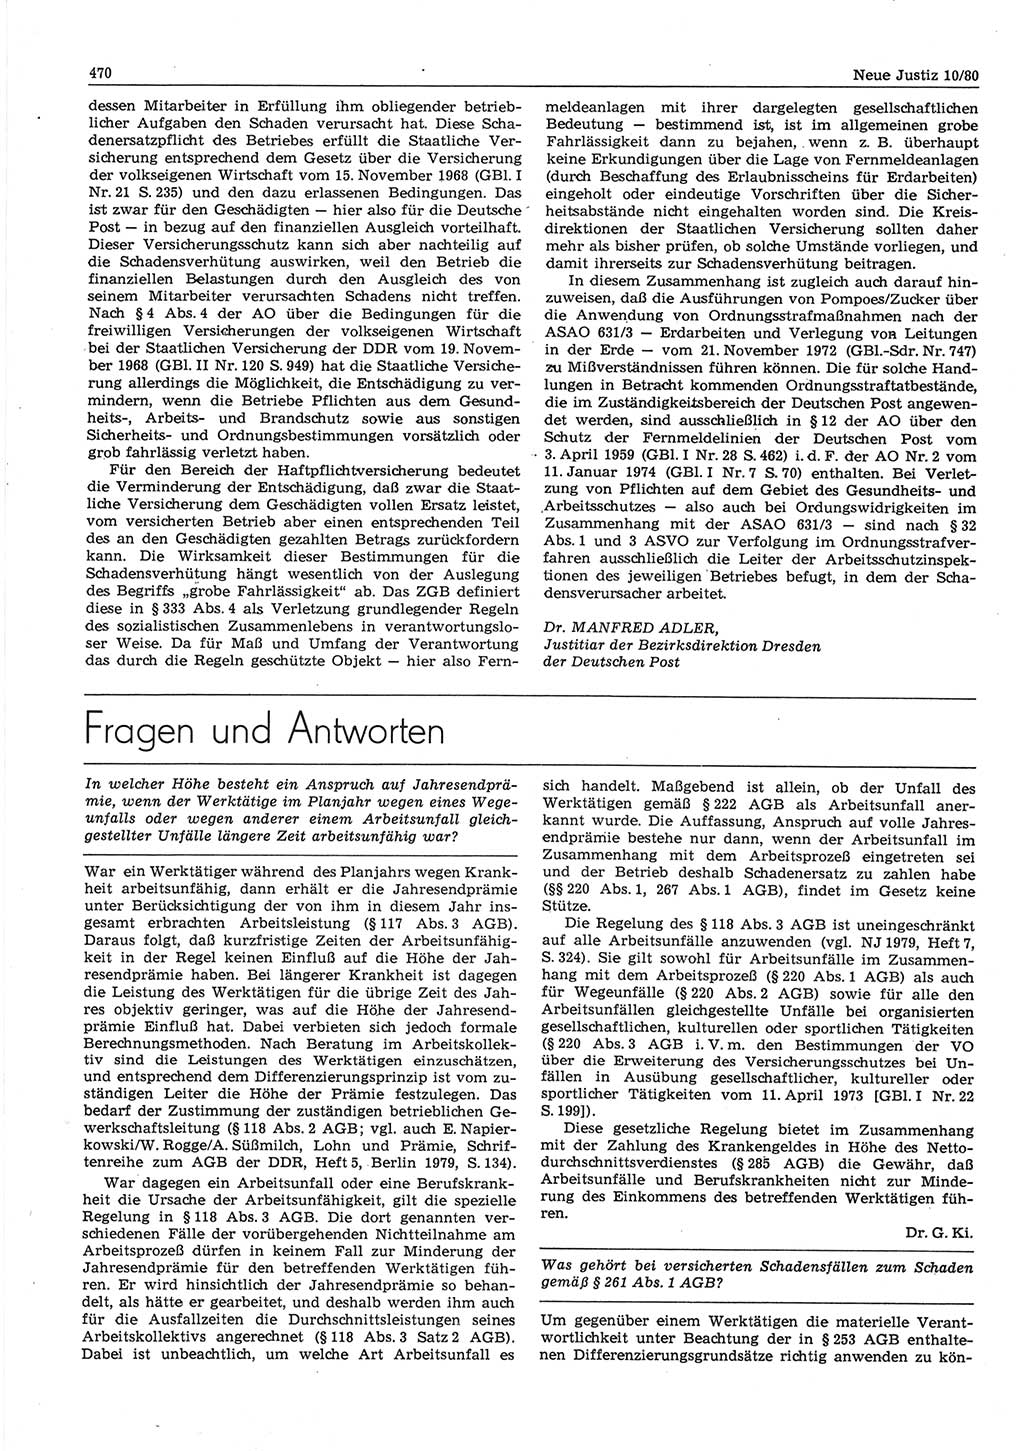 Neue Justiz (NJ), Zeitschrift für sozialistisches Recht und Gesetzlichkeit [Deutsche Demokratische Republik (DDR)], 34. Jahrgang 1980, Seite 470 (NJ DDR 1980, S. 470)